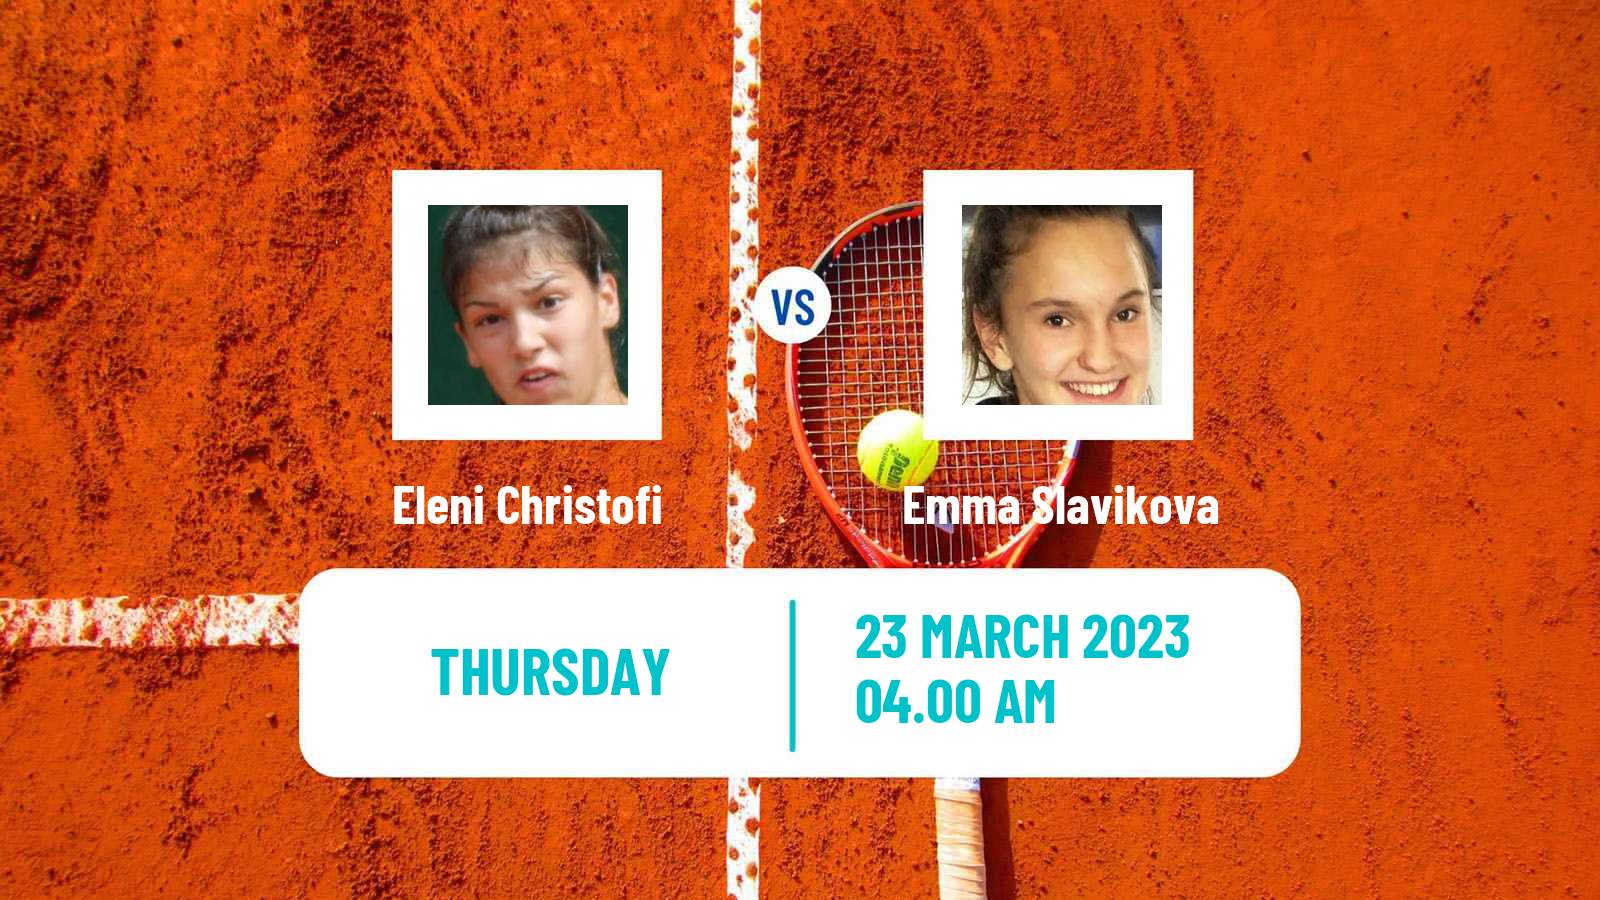 Tennis ITF Tournaments Eleni Christofi - Emma Slavikova